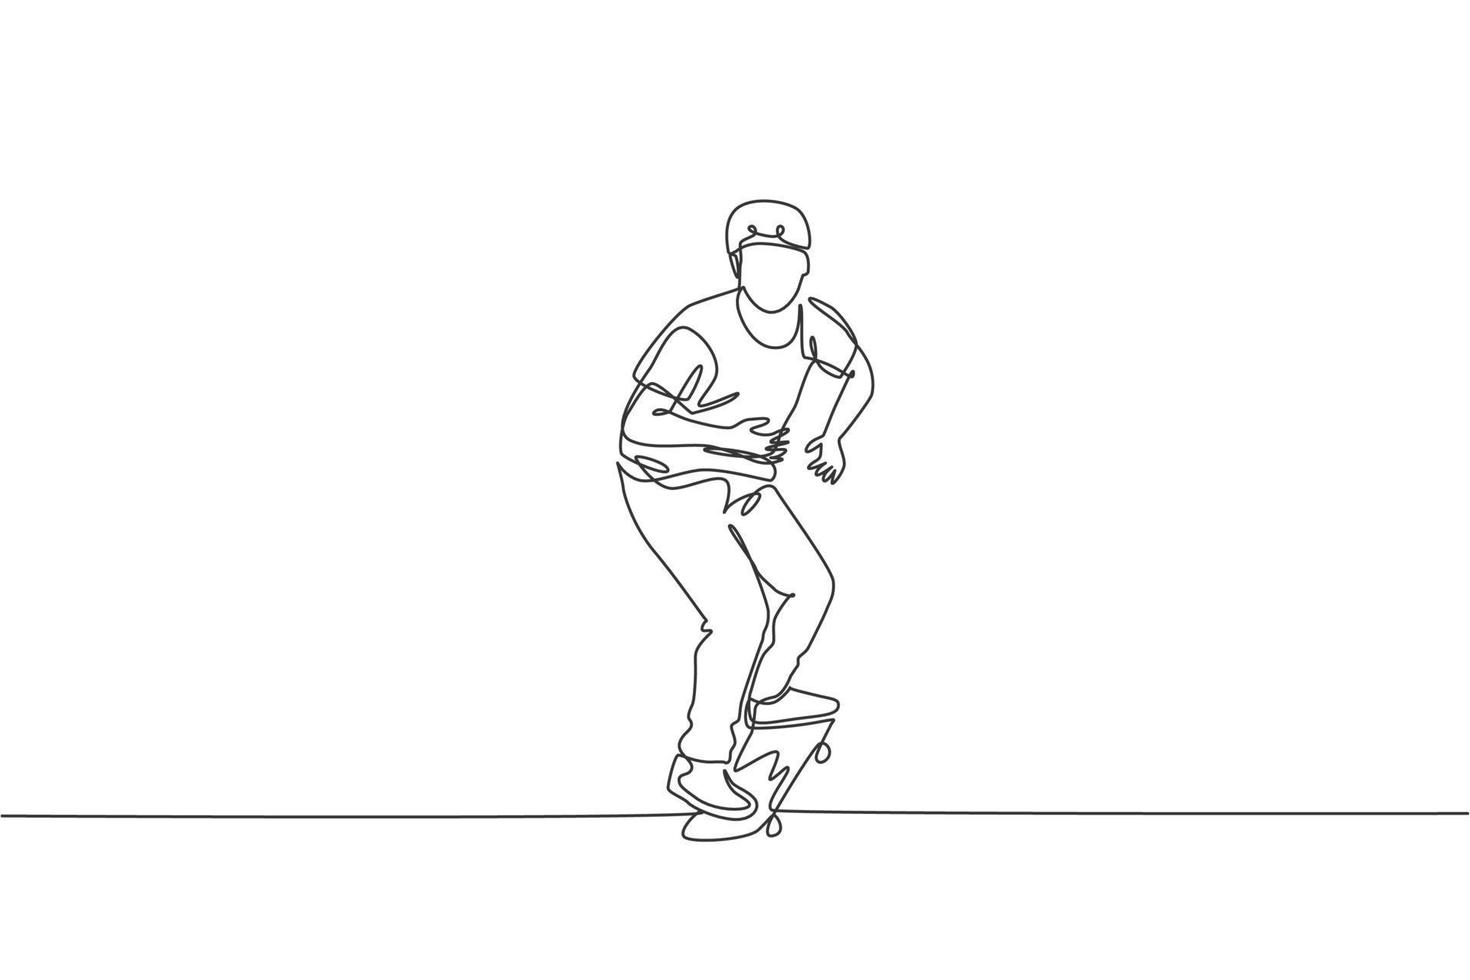 enkele doorlopende lijntekening van een jonge coole skateboarder die skate berijdt en een truc uitvoert in het skatepark. het beoefenen van buitensportconcept. trendy één lijn tekenen ontwerp vector illustratie afbeelding